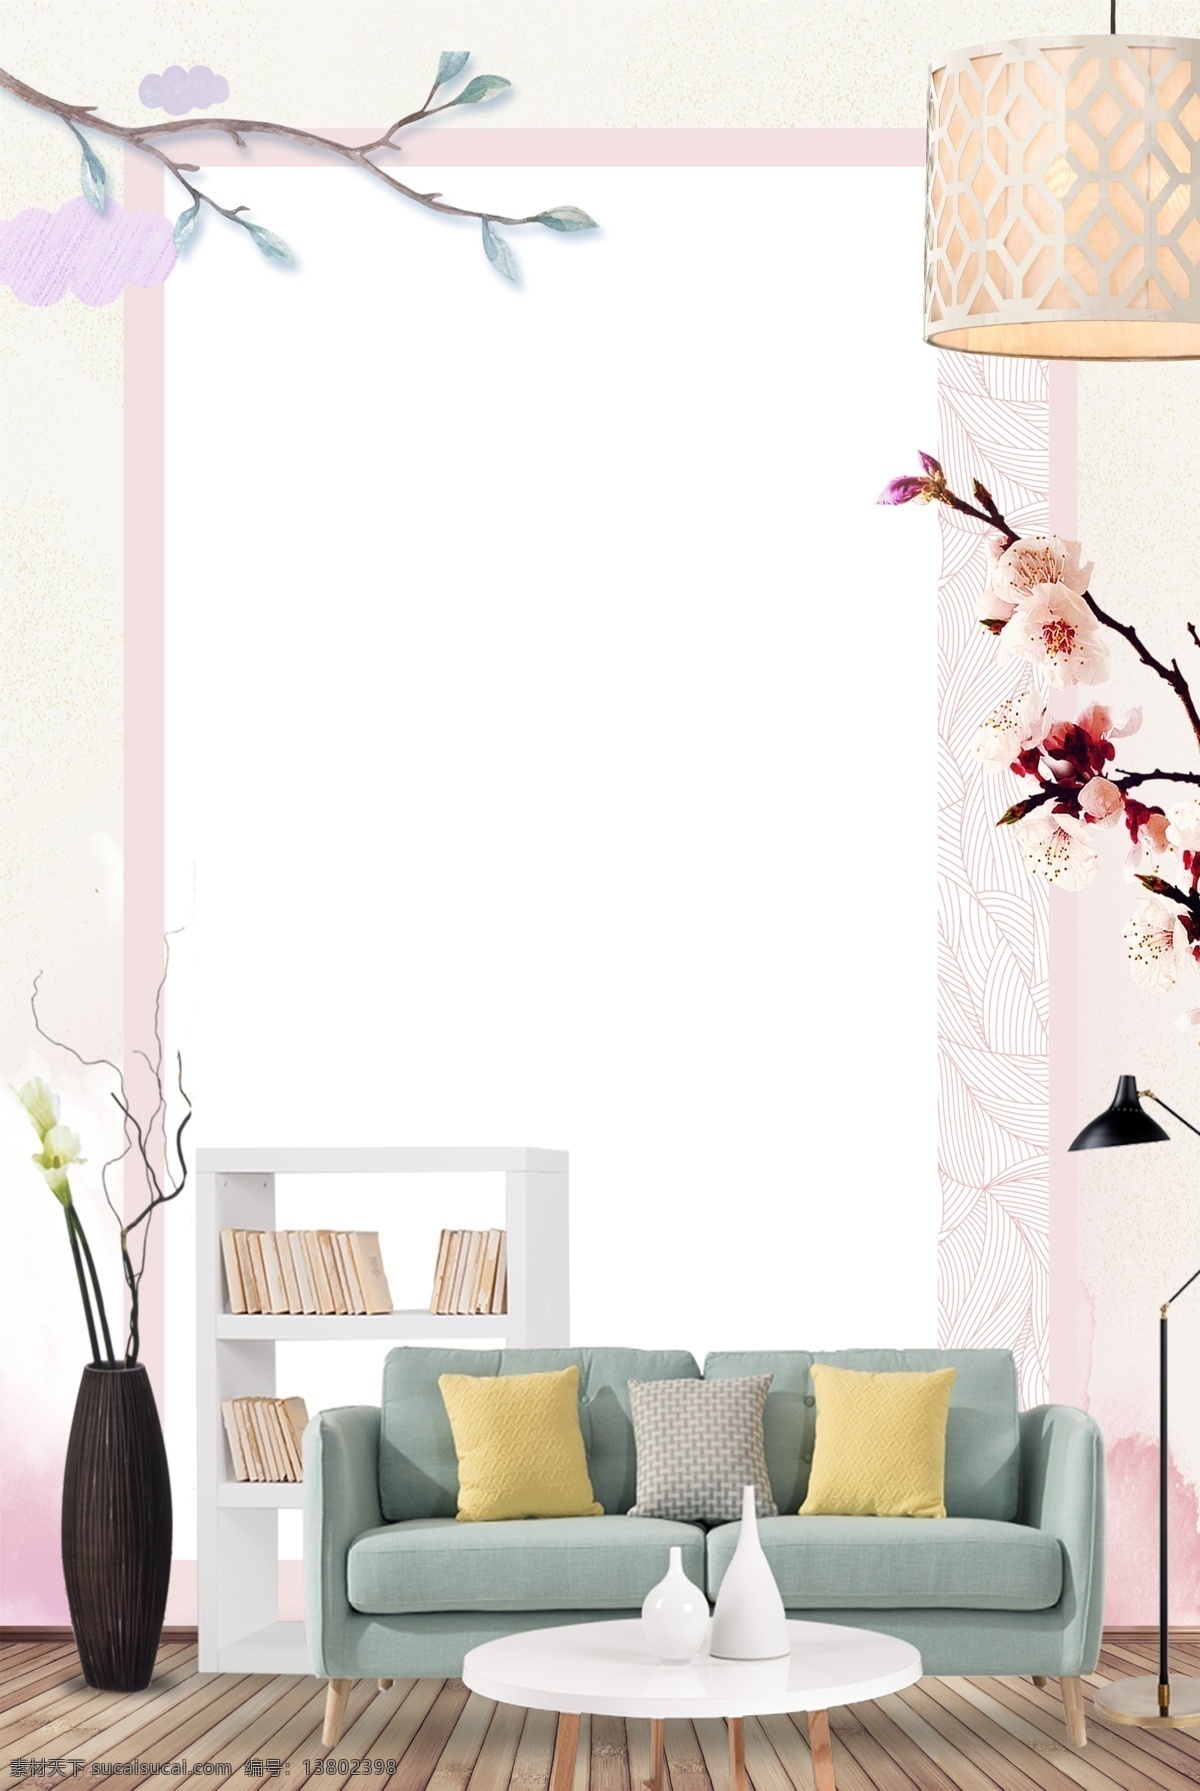 家居 客厅 沙发 花枝 海报 背景 海报背景 花朵 简约 效果图 花瓶 书架